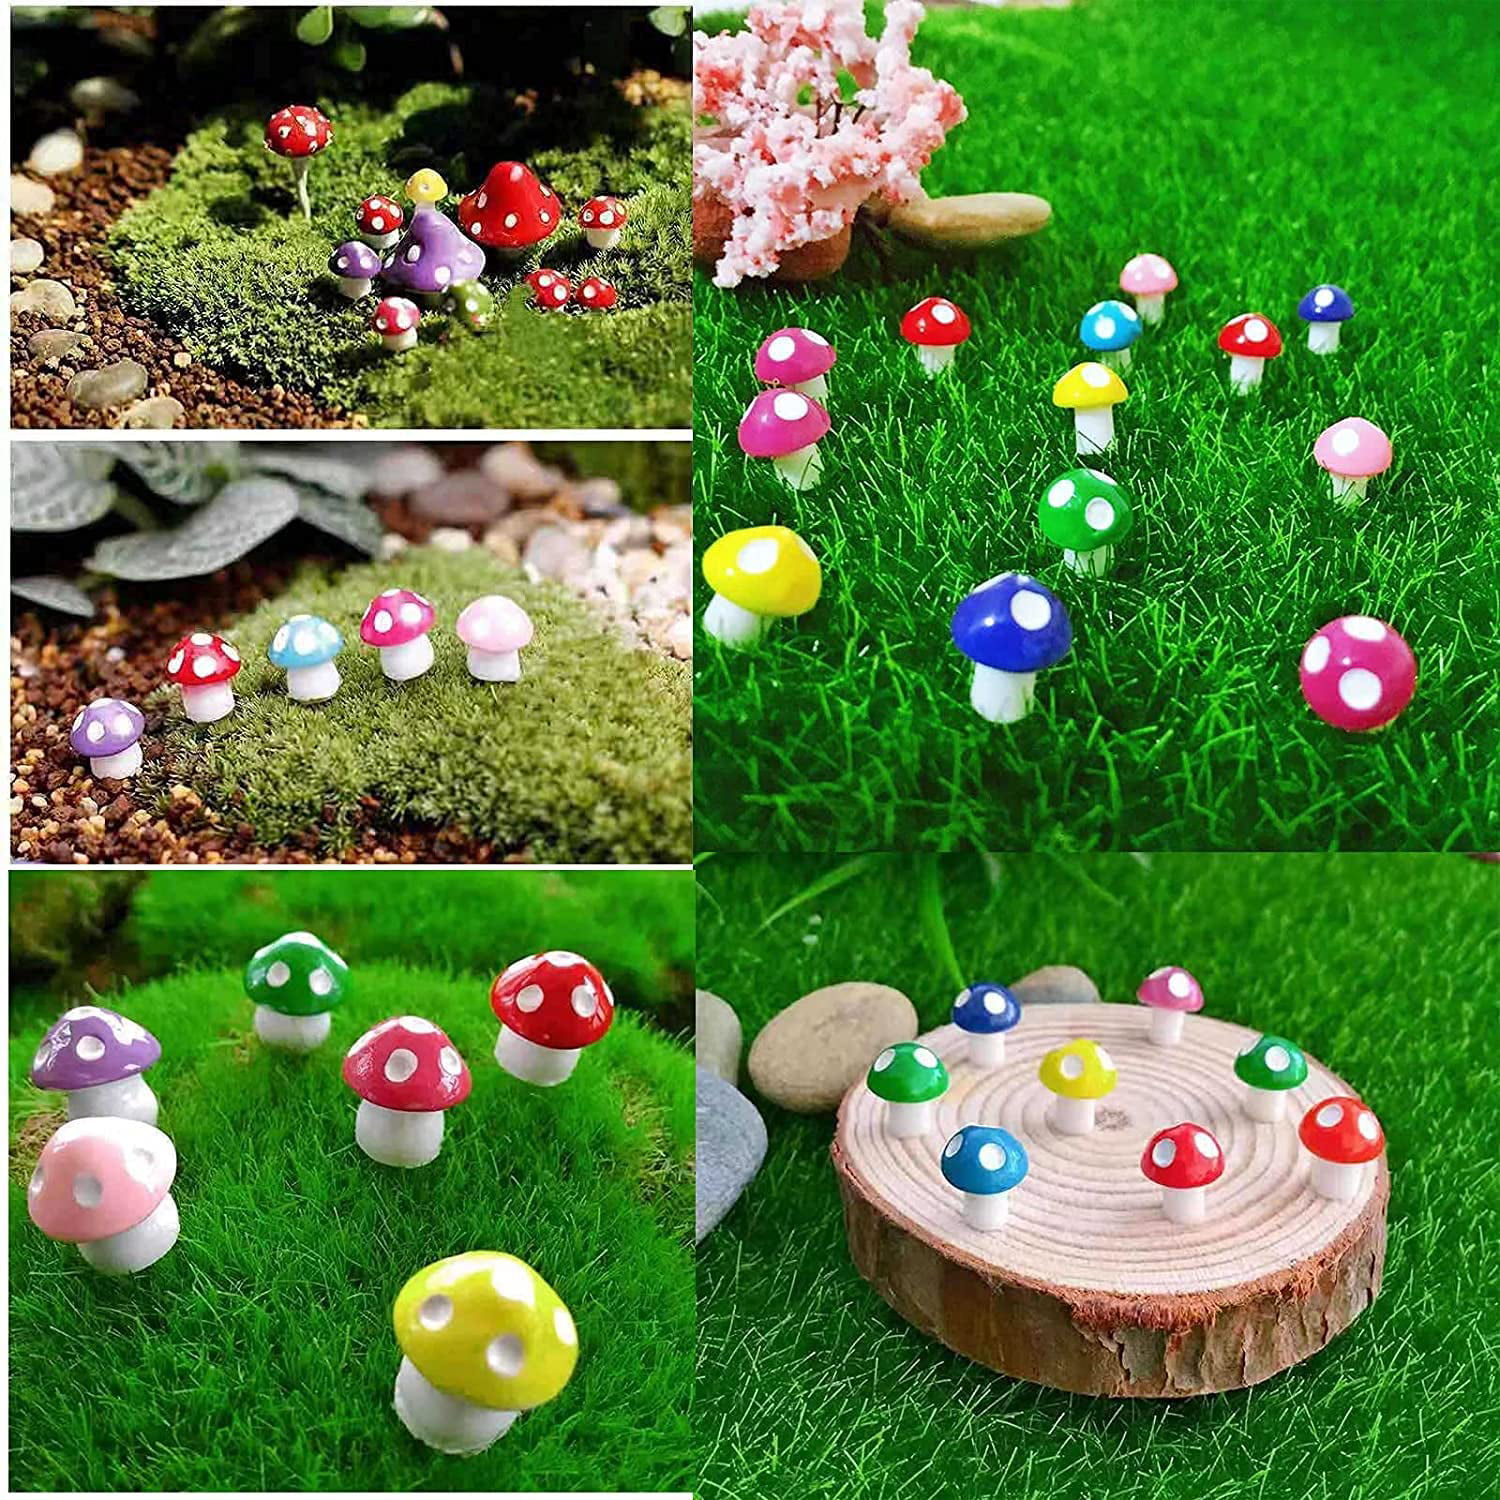 TCJJ 52 Pieces Miniature Fairy Garden Accessories Miniature Garden Houses and Figurines DIY Micro Landscape Ornaments for Garden Dollhouse Potted Plant Bonsai Terrarium Decor 